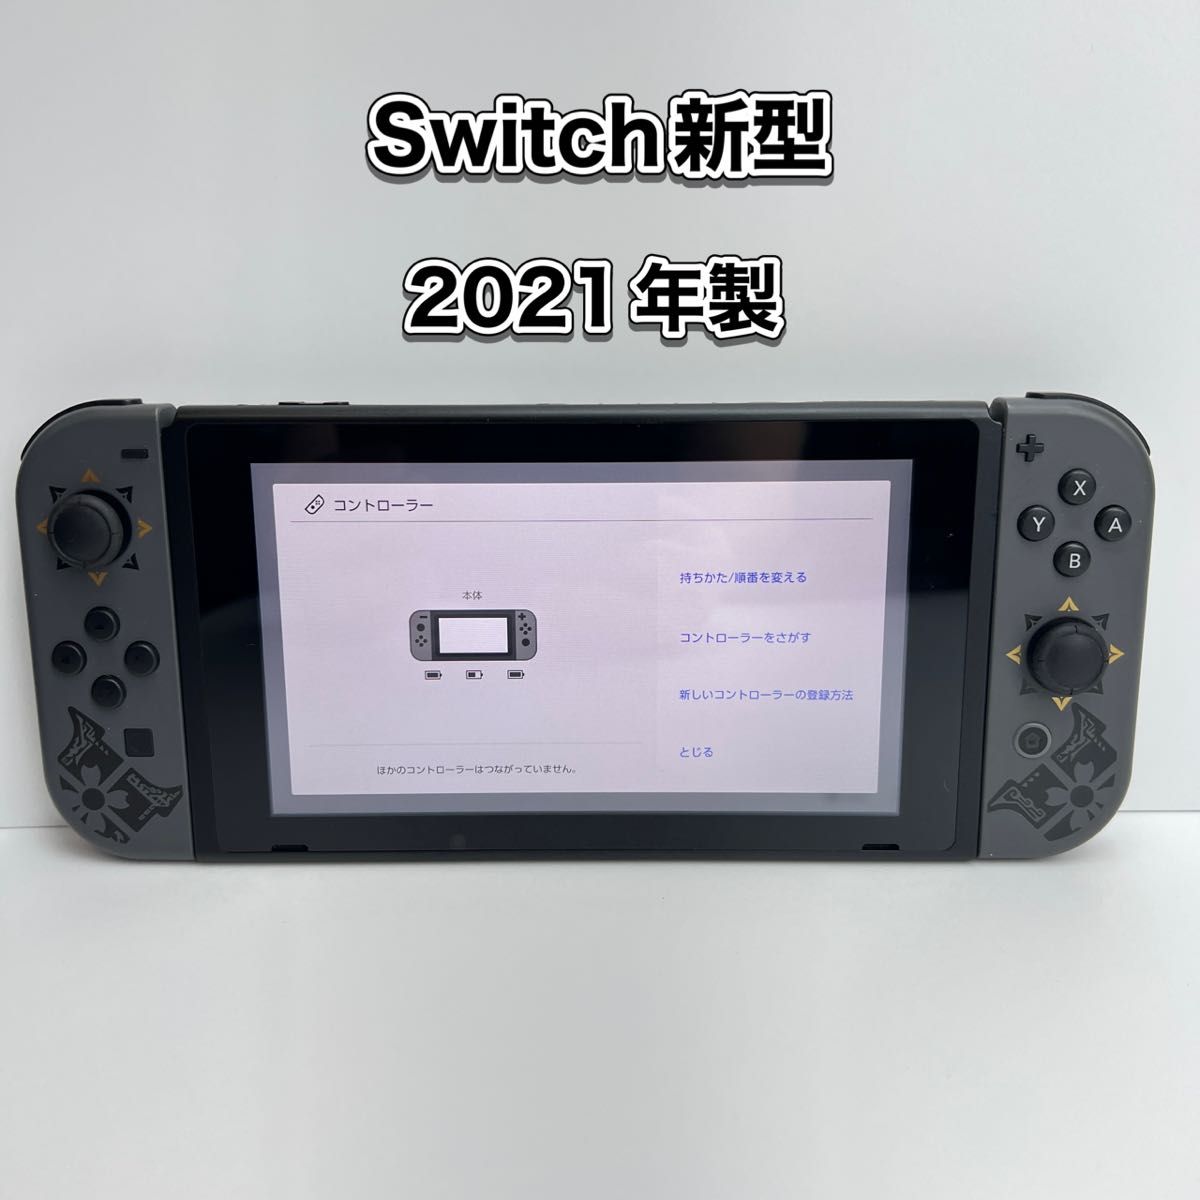 【ソフトなし】《Switch》新型・バッテリー強化モデル モンスターハンターライズ 本体 2021年製 Joy-Con セット